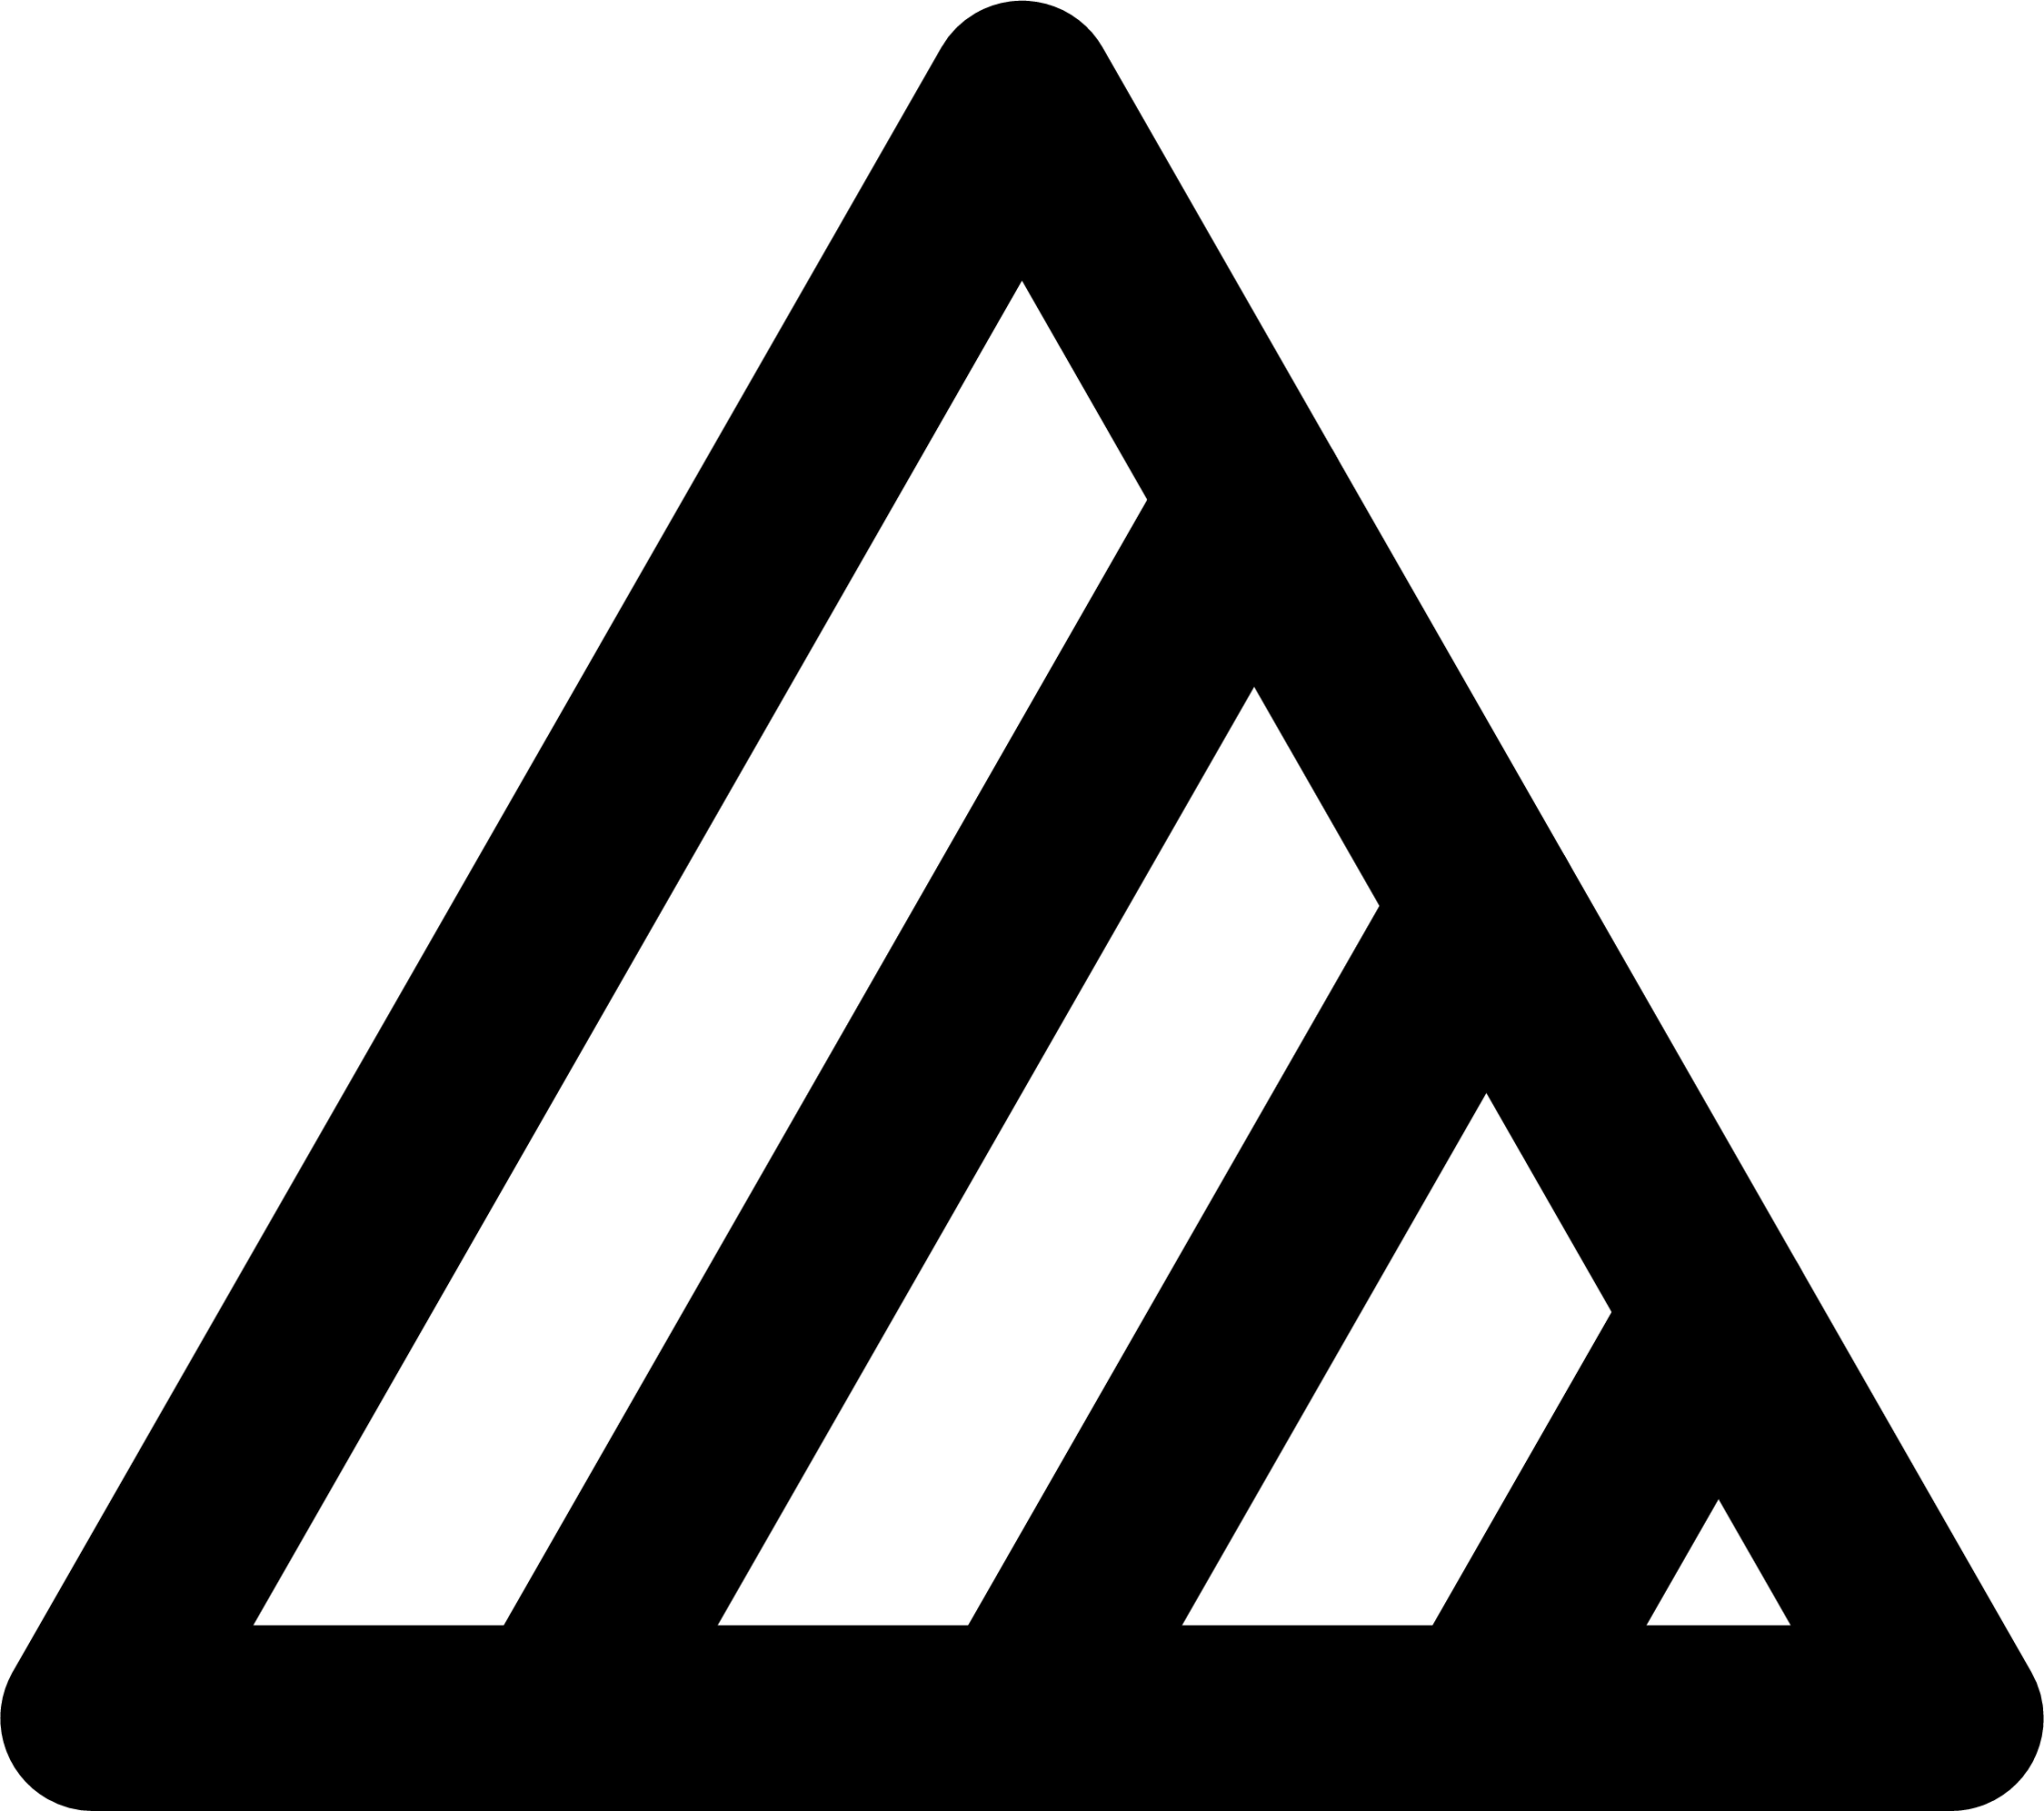 multi triangular icon